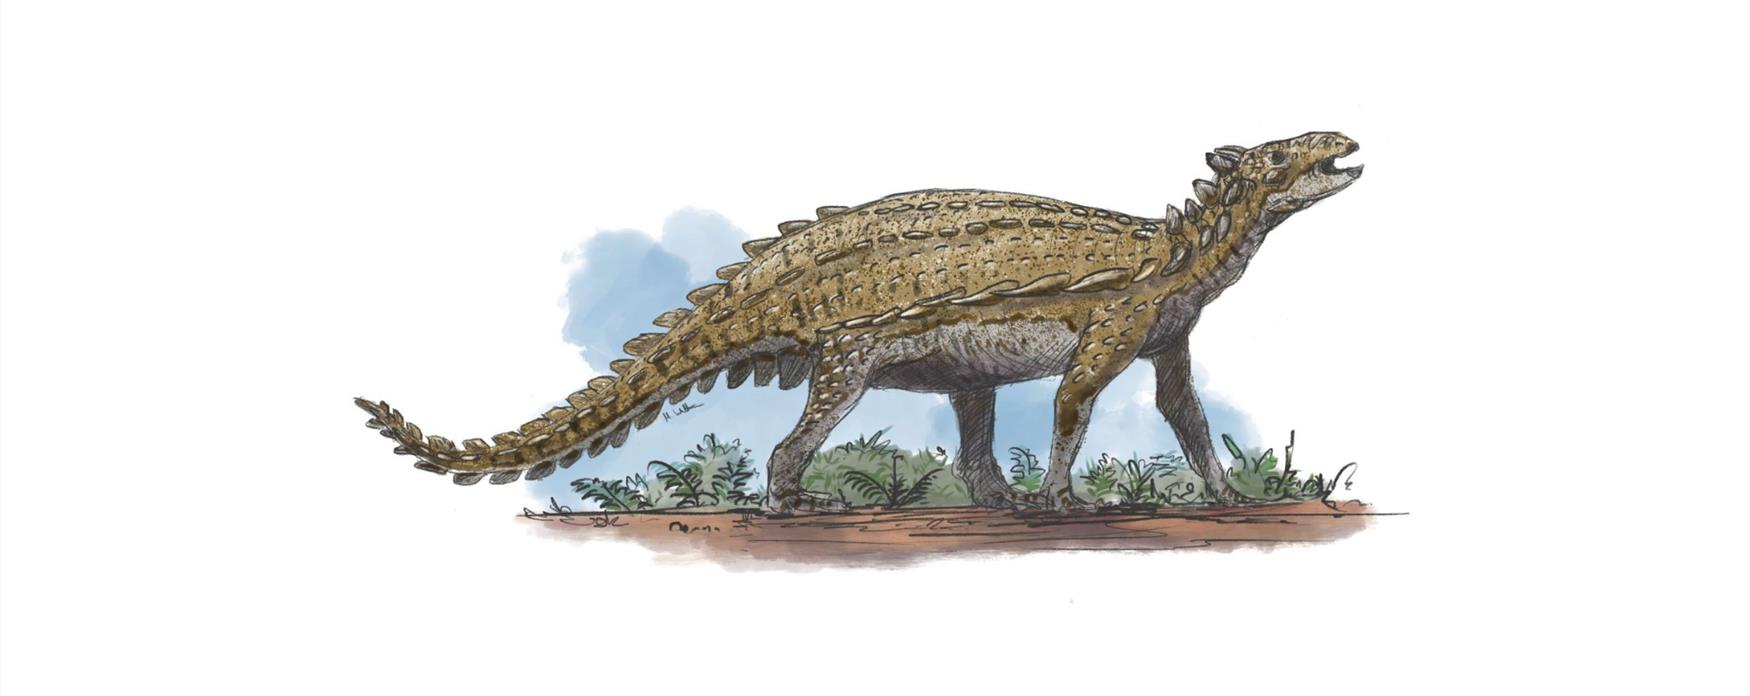 Scelidosaurus artwork